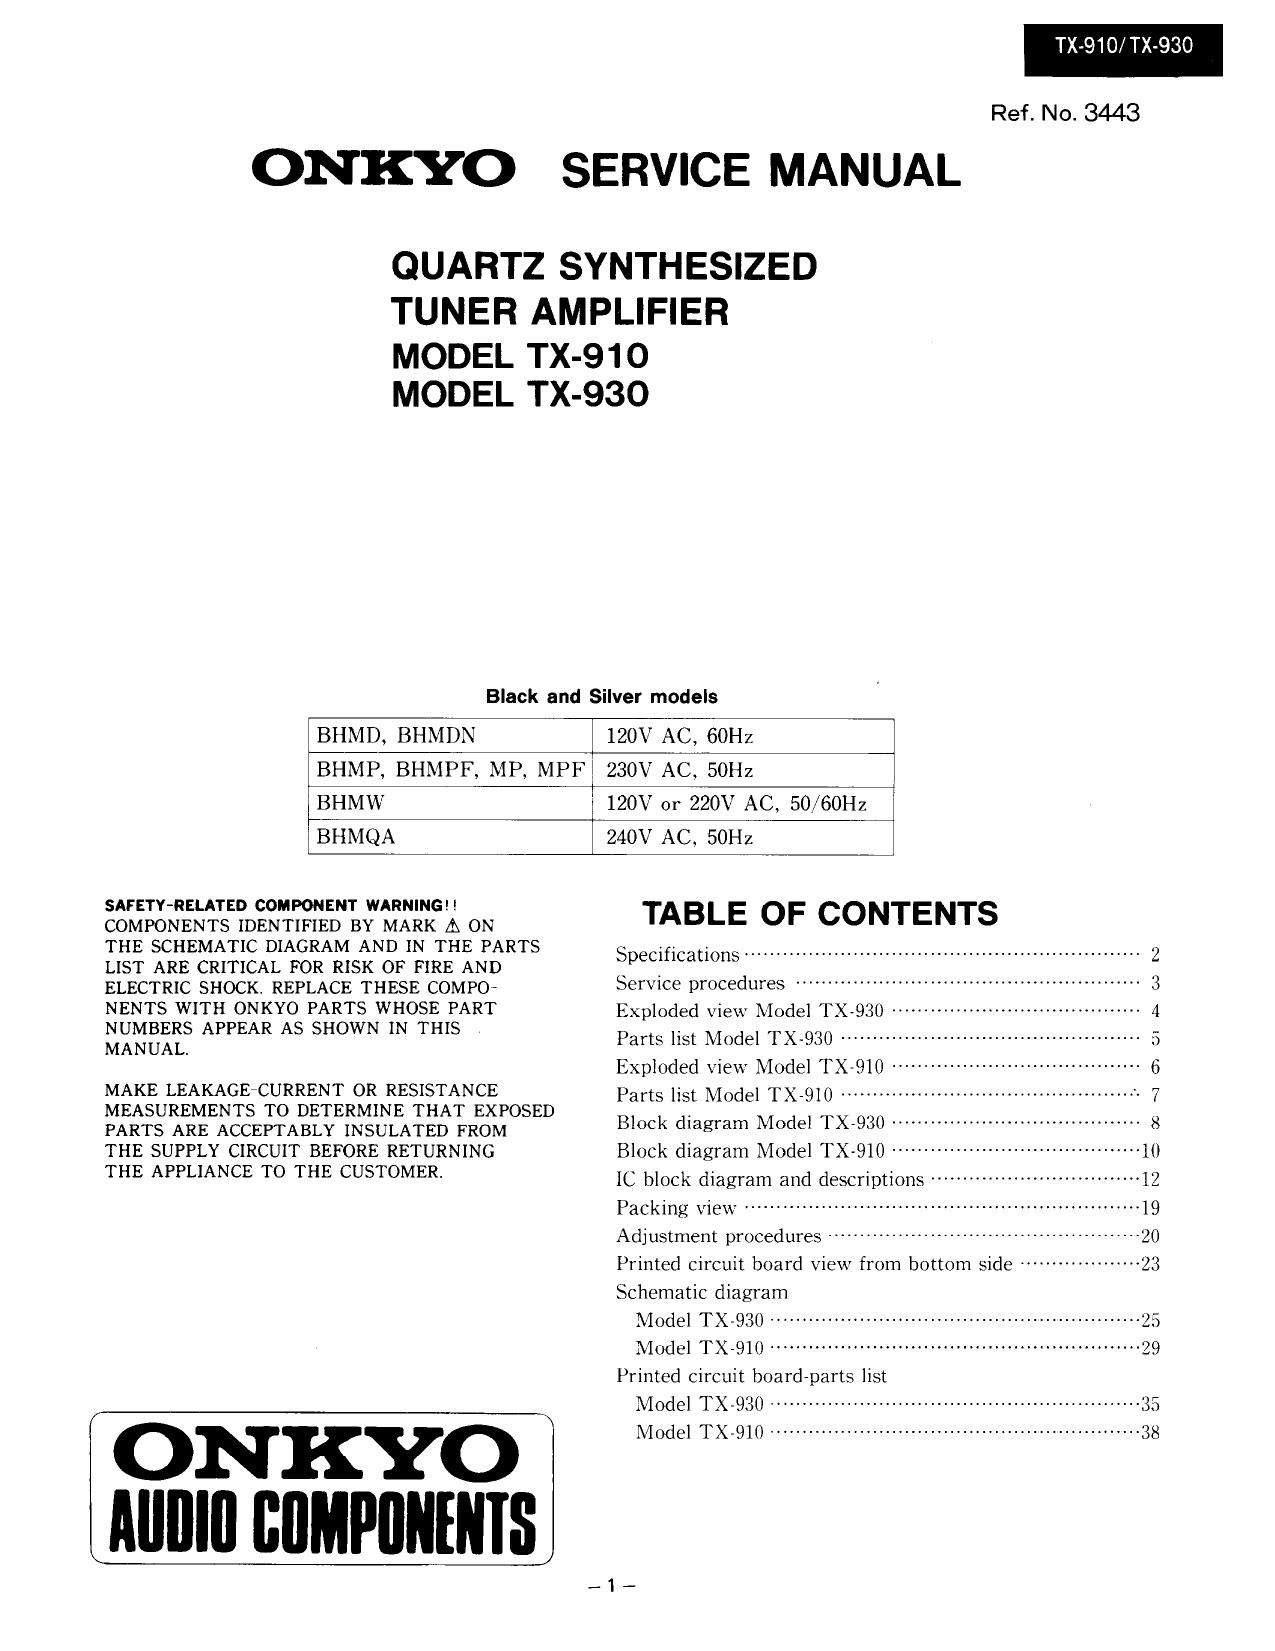 Onkyo TX 910 Service Manual